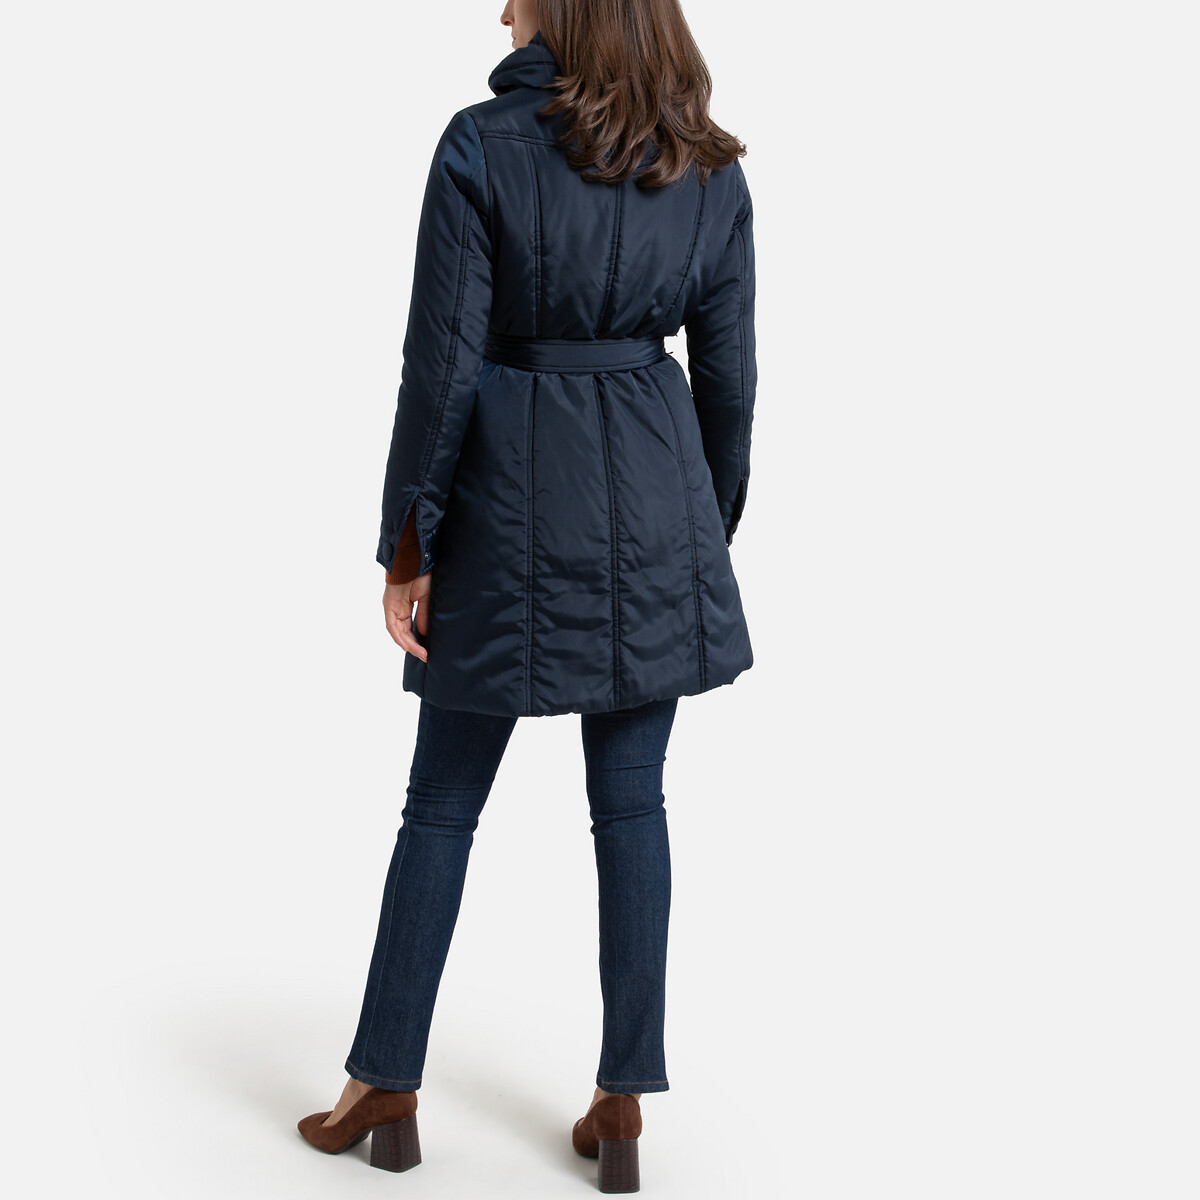 Куртка La Redoute Стеганая средней длины зимняя модель 38 (FR) - 44 (RUS) синий, размер 38 (FR) - 44 (RUS) Стеганая средней длины зимняя модель 38 (FR) - 44 (RUS) синий - фото 4